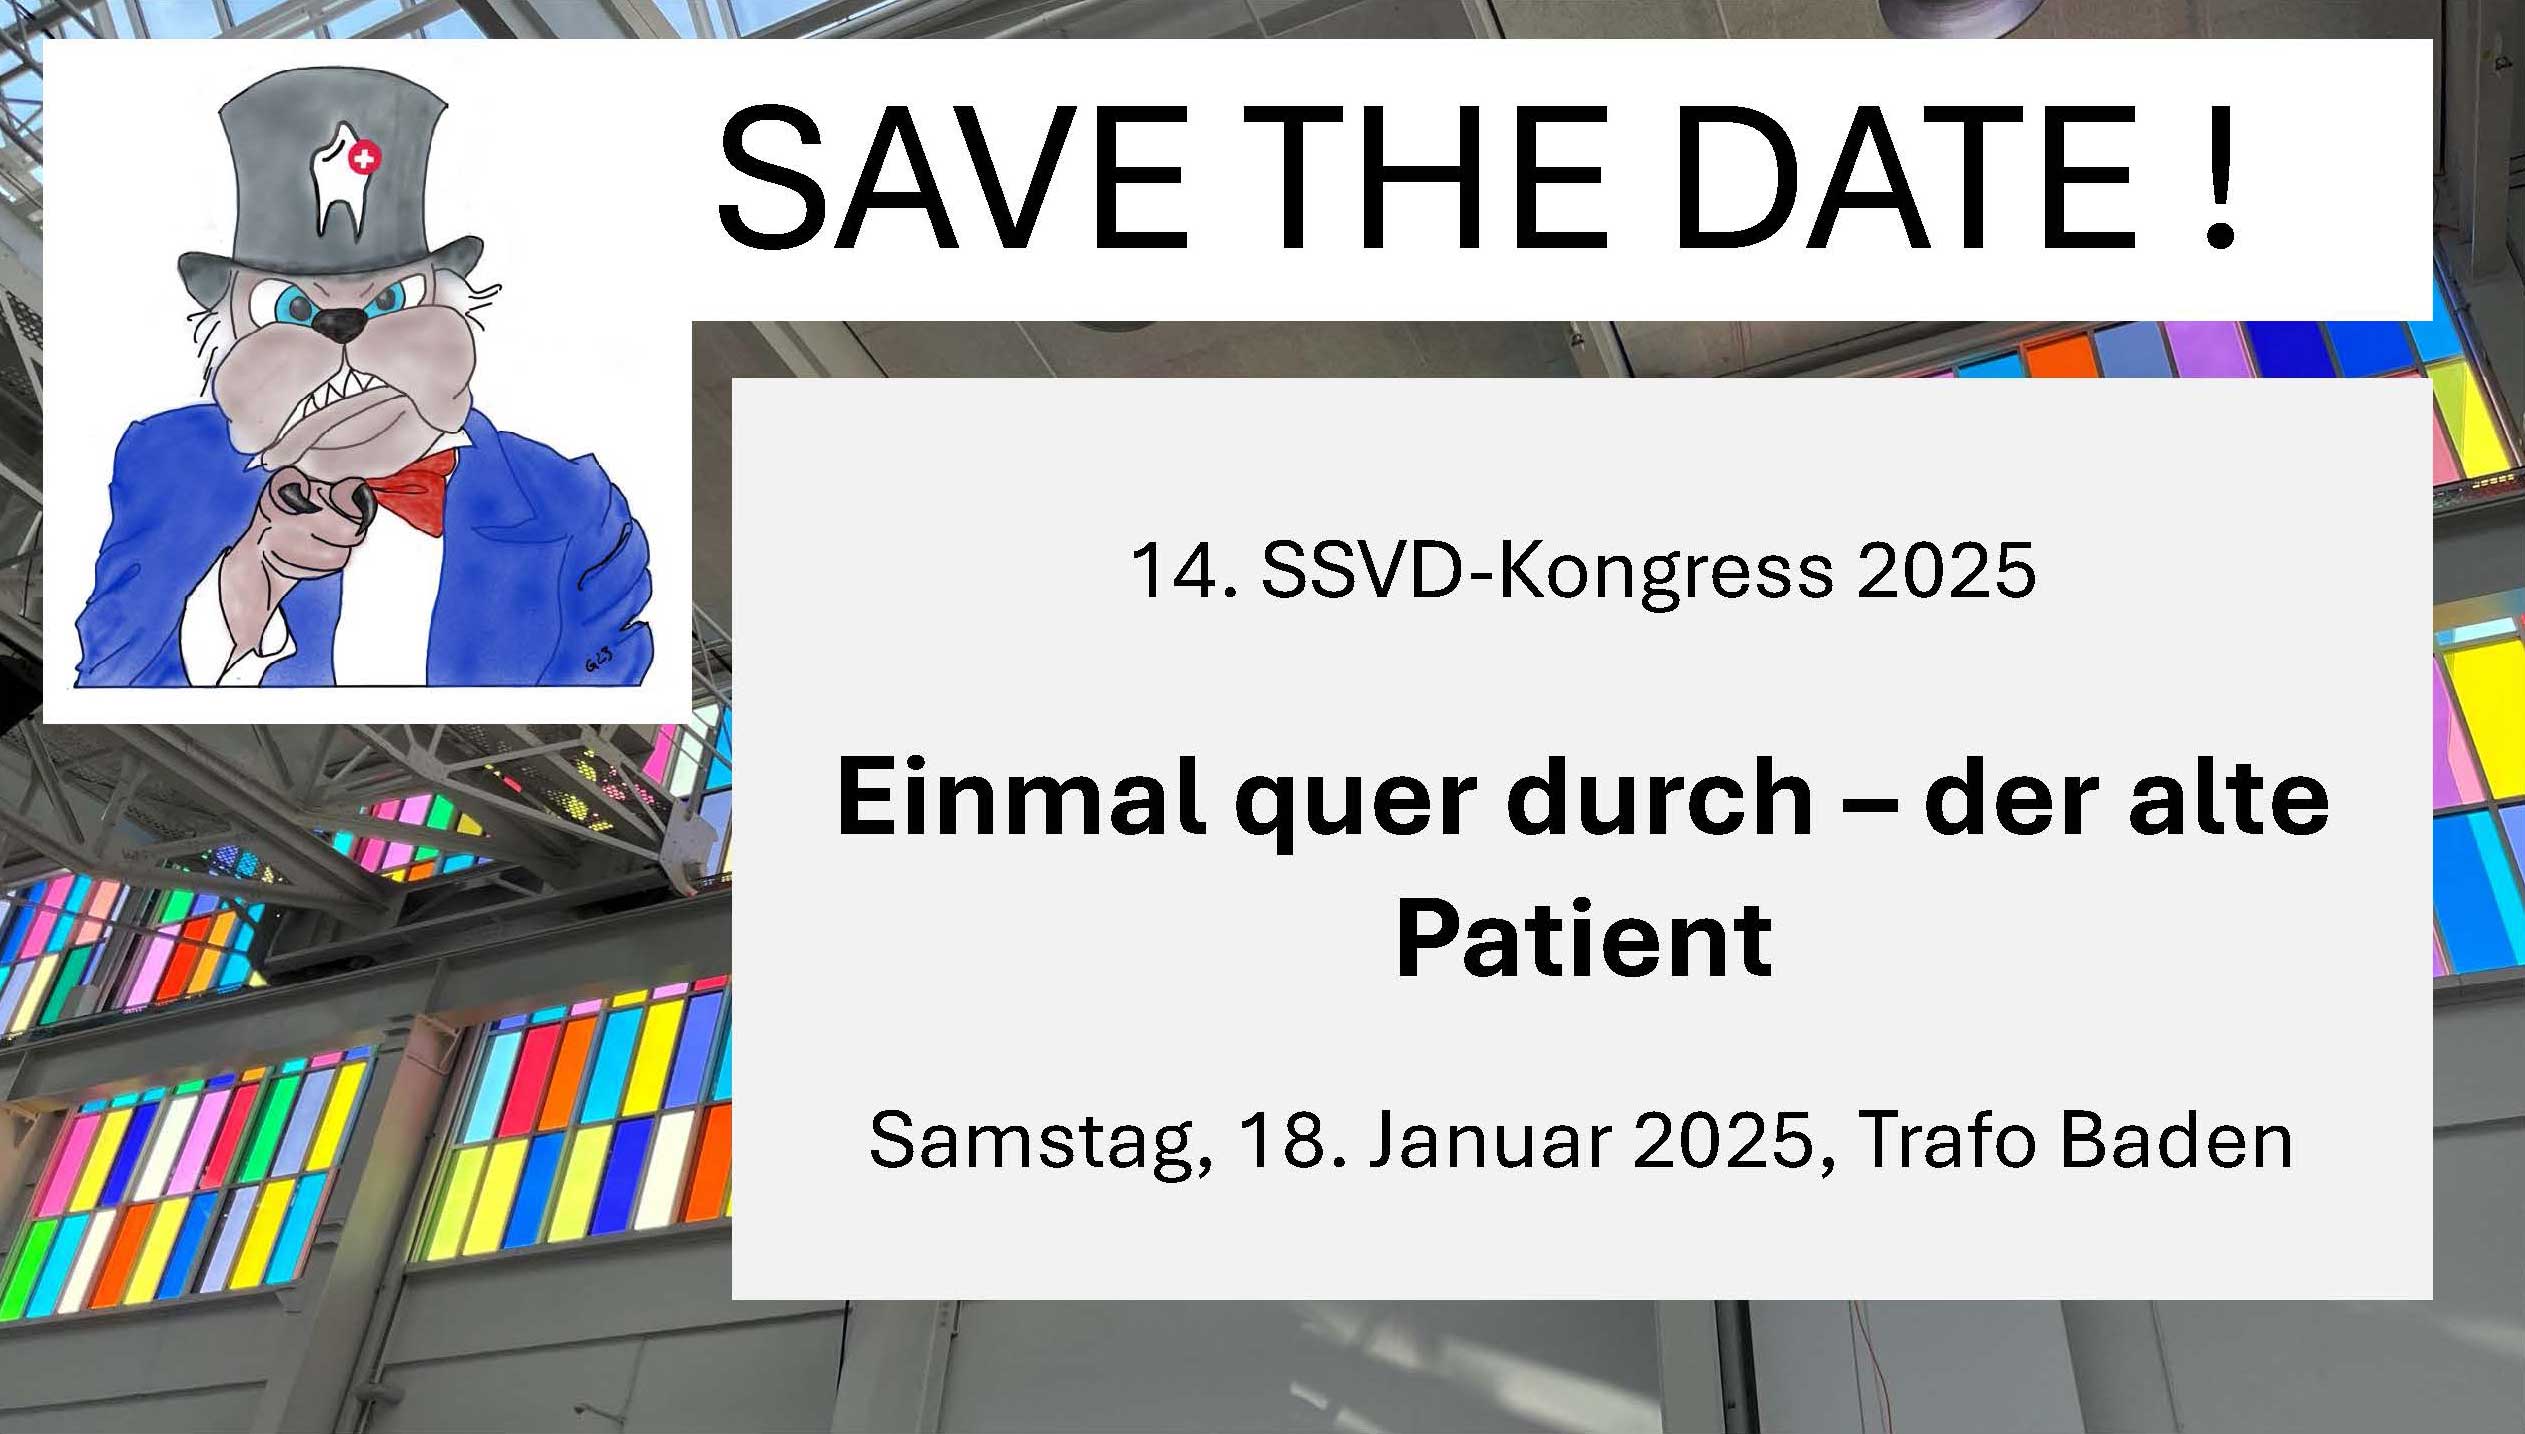 save the date - SSVD Kongress 2025 - Thema: Einmal quer durch - der alte Zahnpatient - 18.01.2025